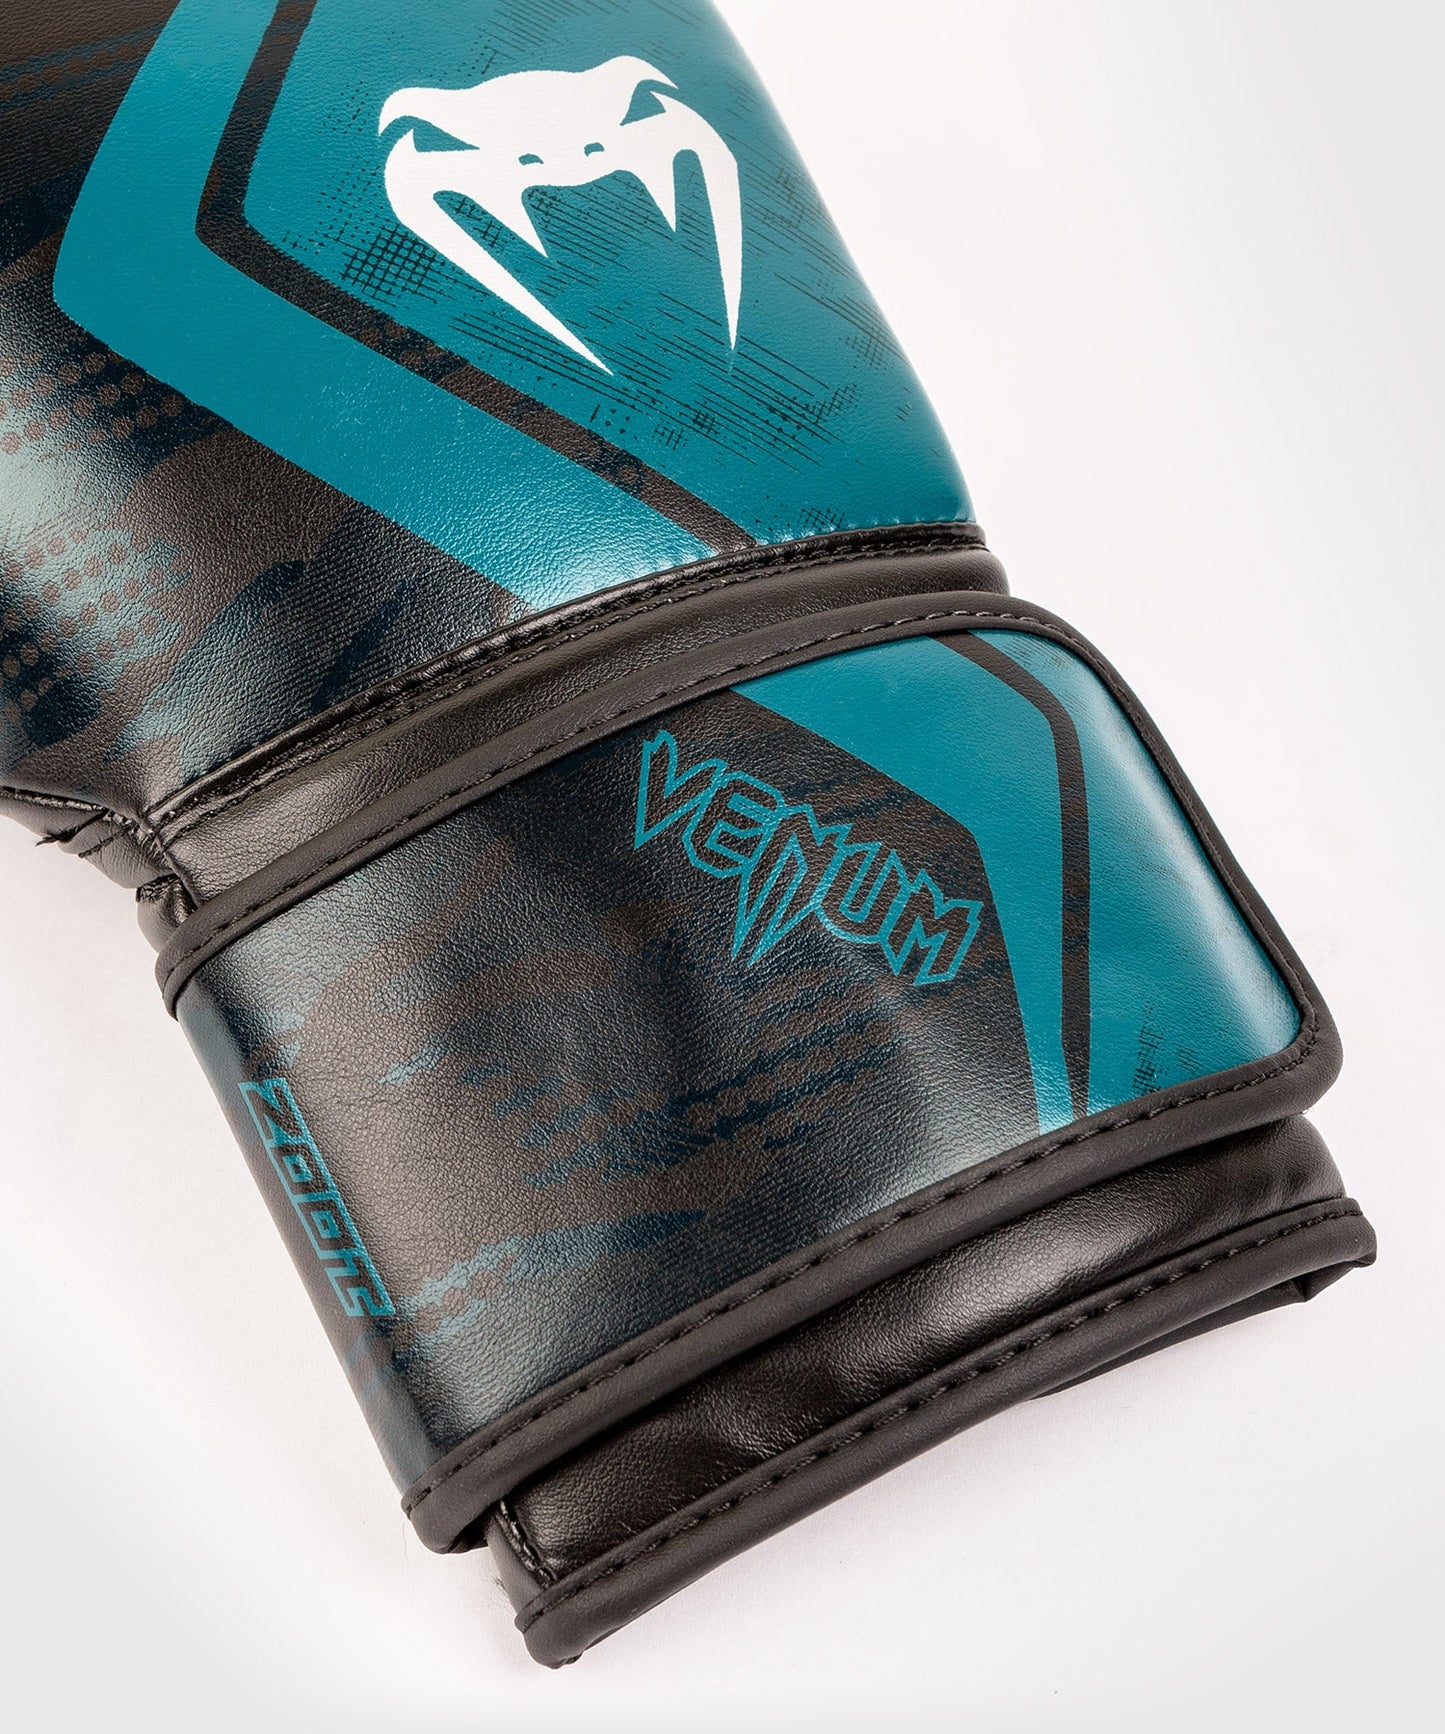 Venum Defender Contender 2.0 Boxing Gloves - Black/Green